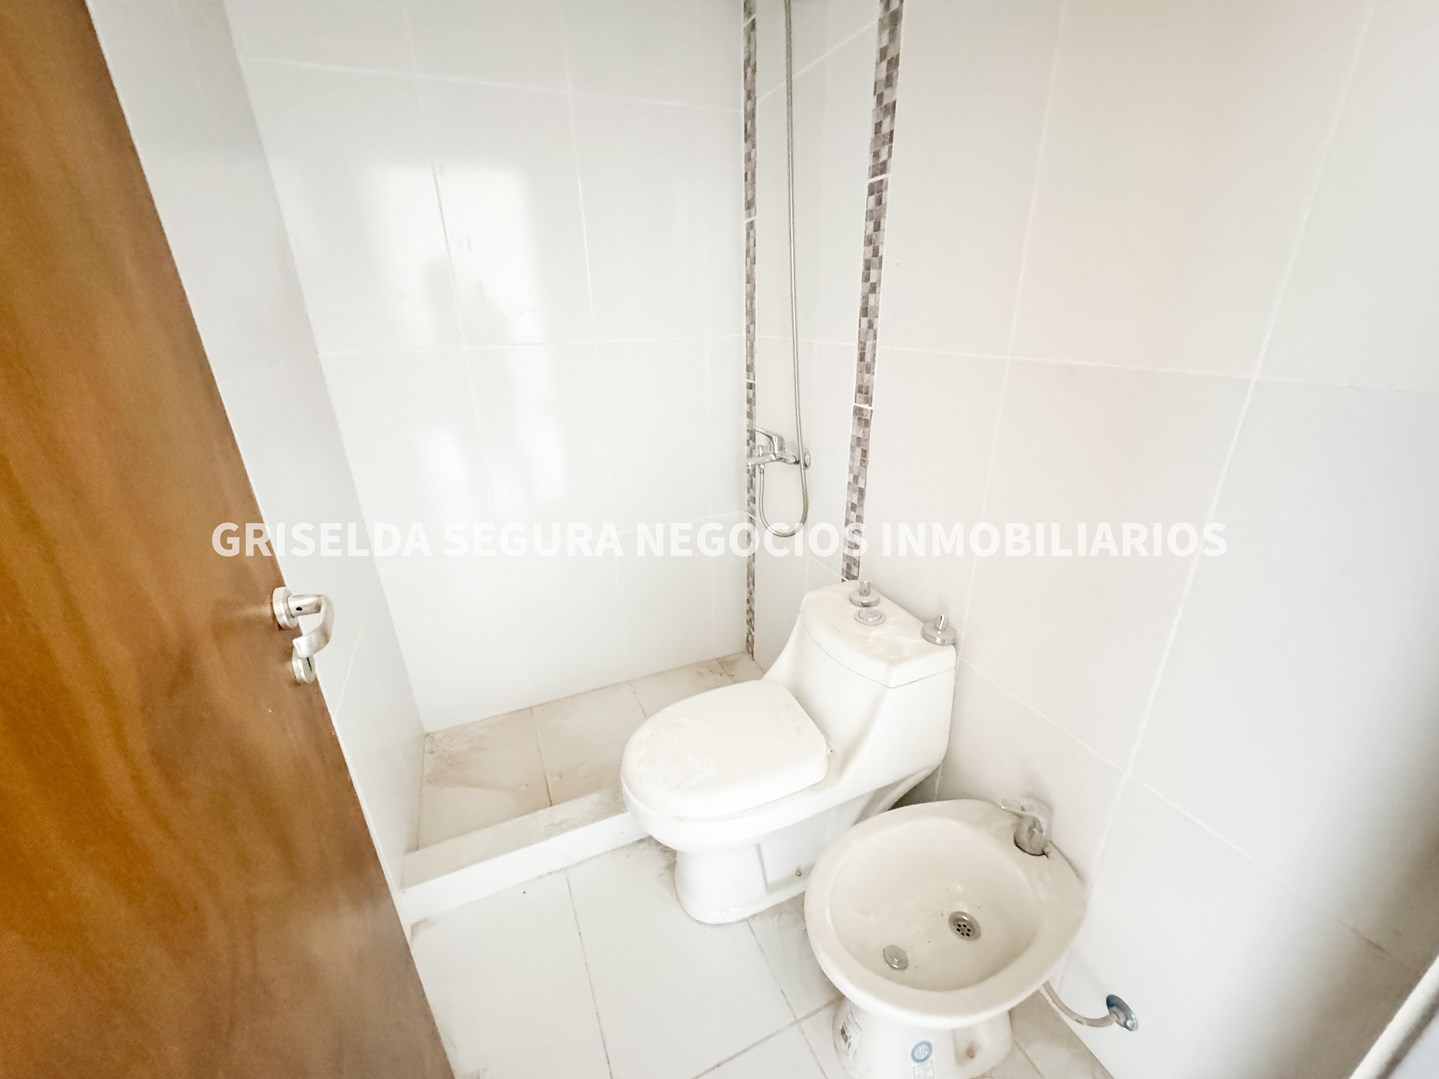 #5075954 | Sale | Apartment | Pilar (Griselda Segura Negocios Inmobiliarios)